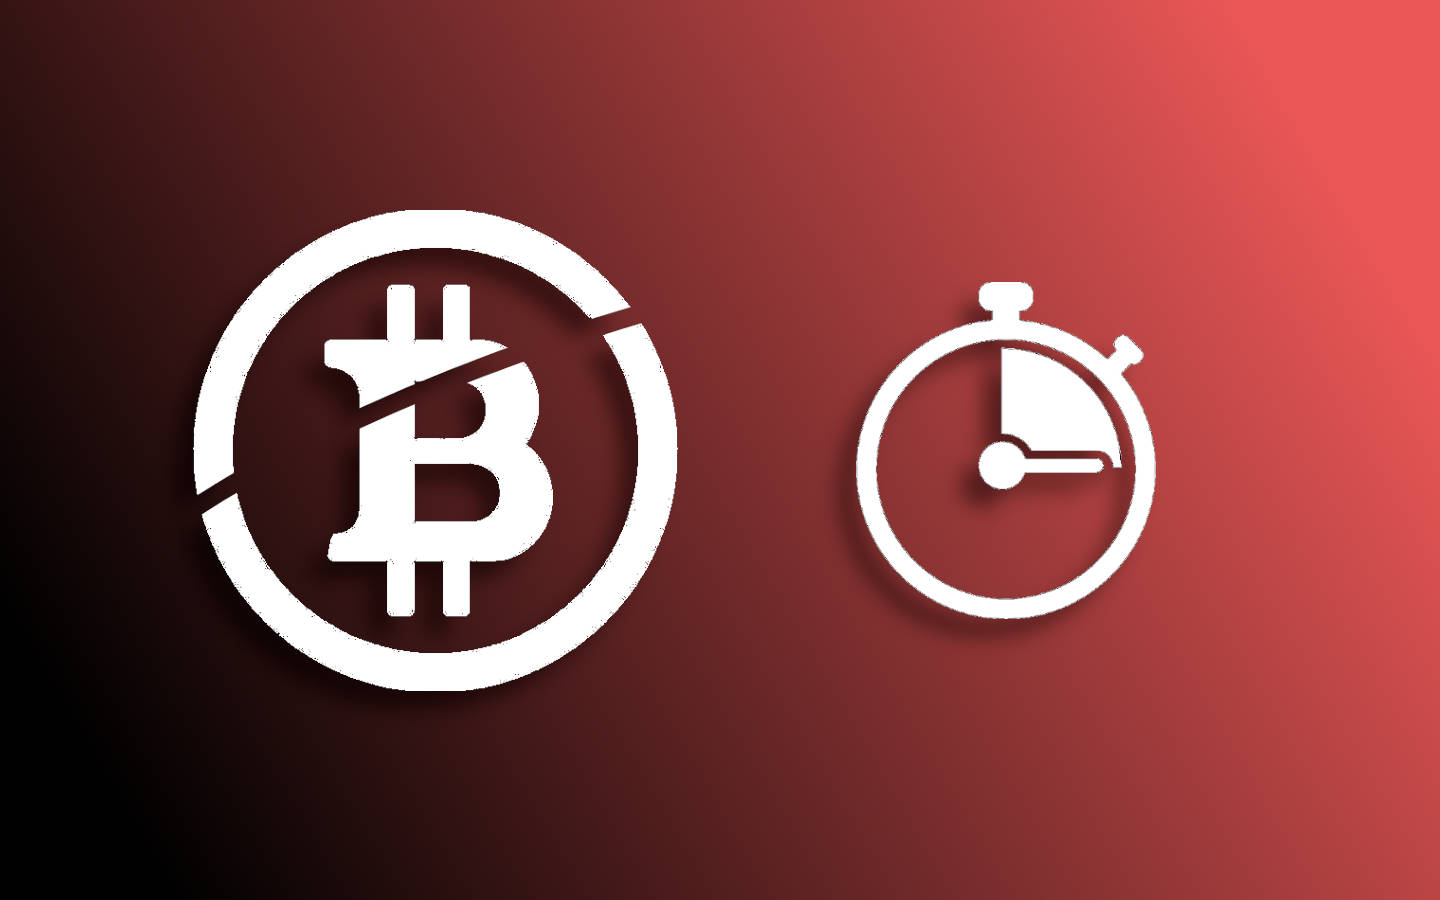 A clip art image signifying prediction of Bitcoin reward halvings